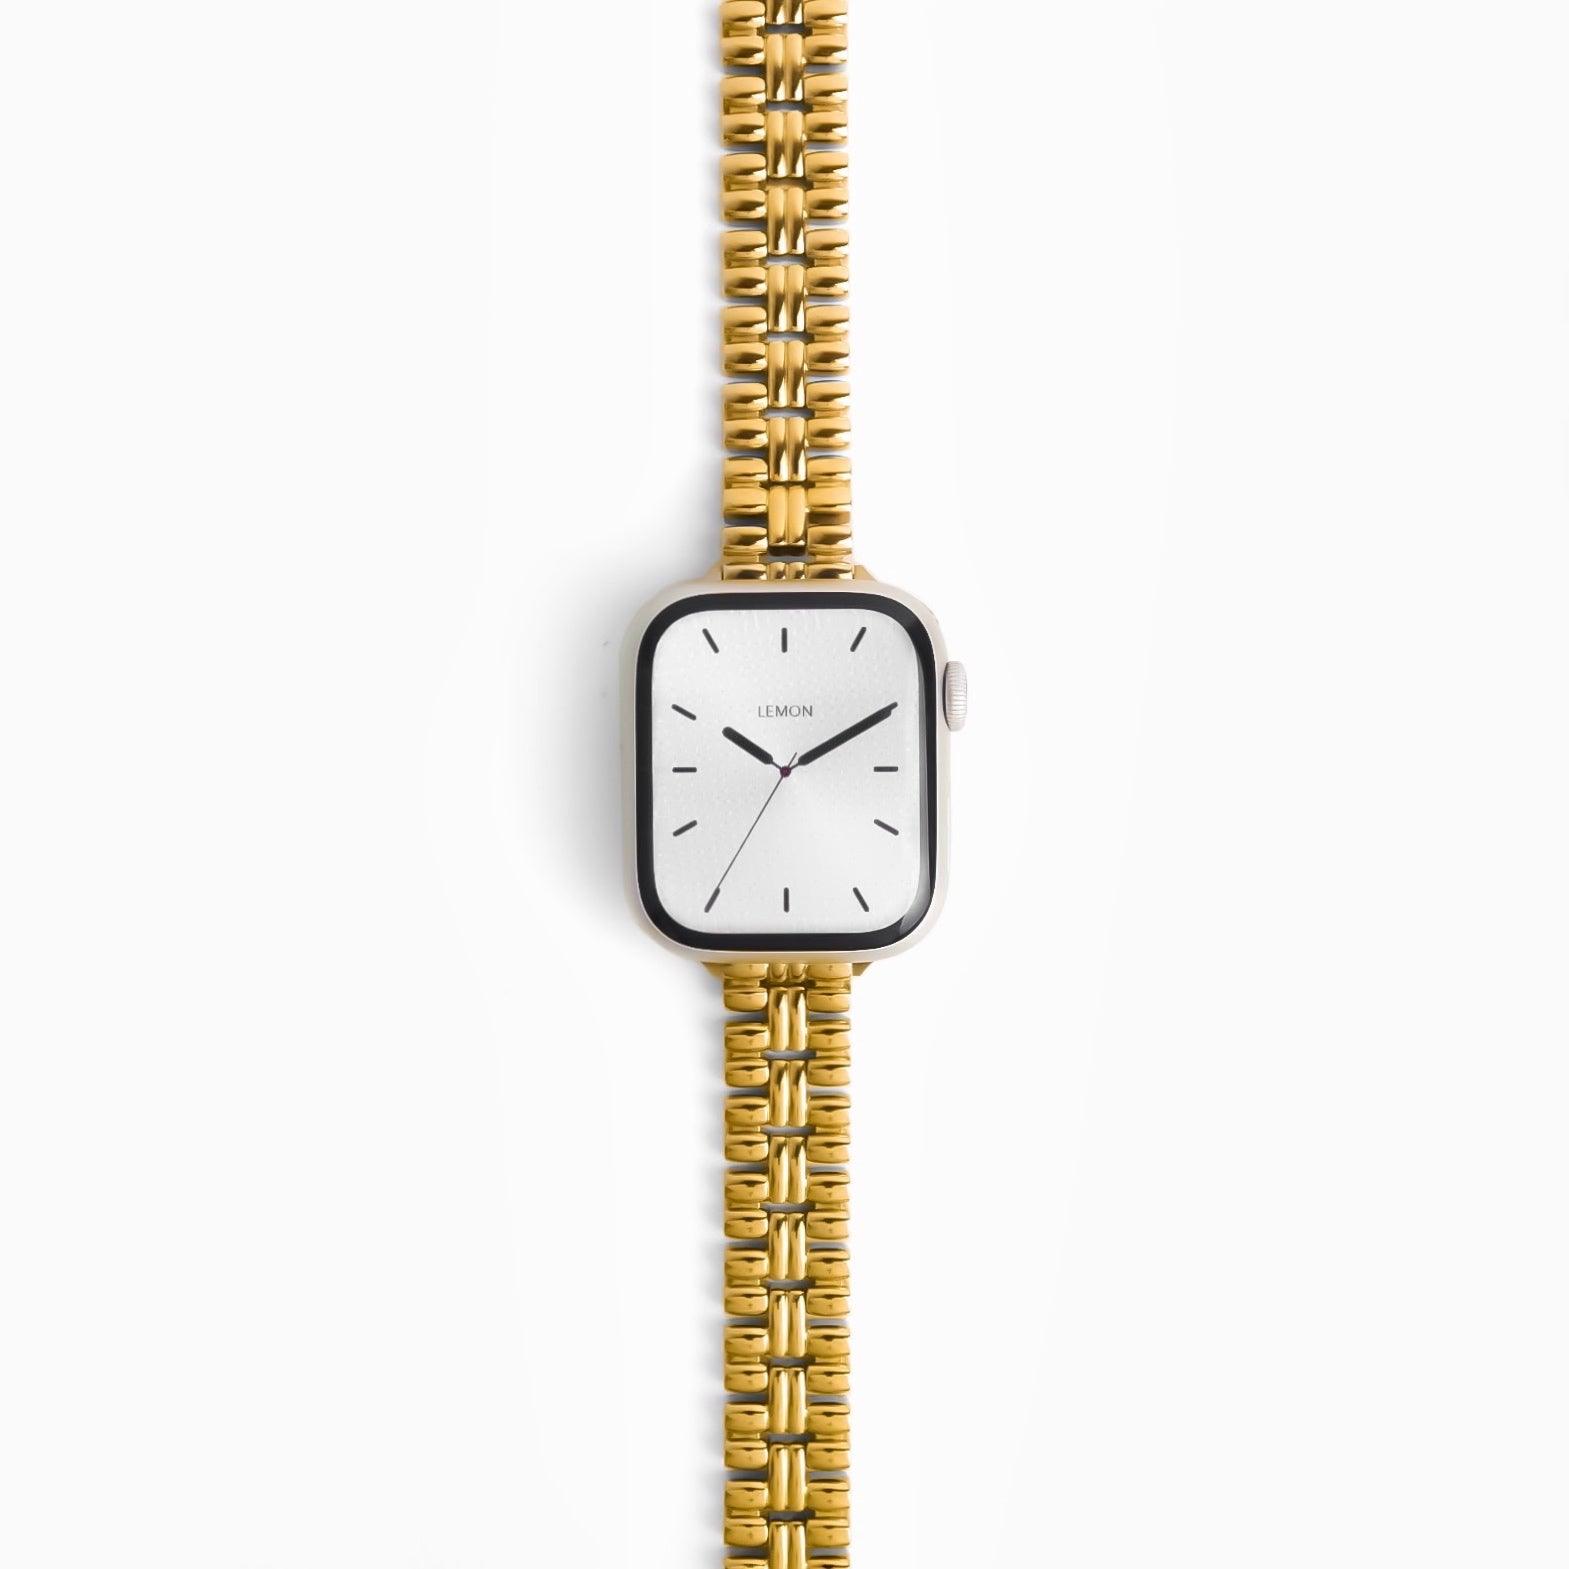 (St-Steel) Flowerwall Apple Watch Bracelet - 18k Gold Plated